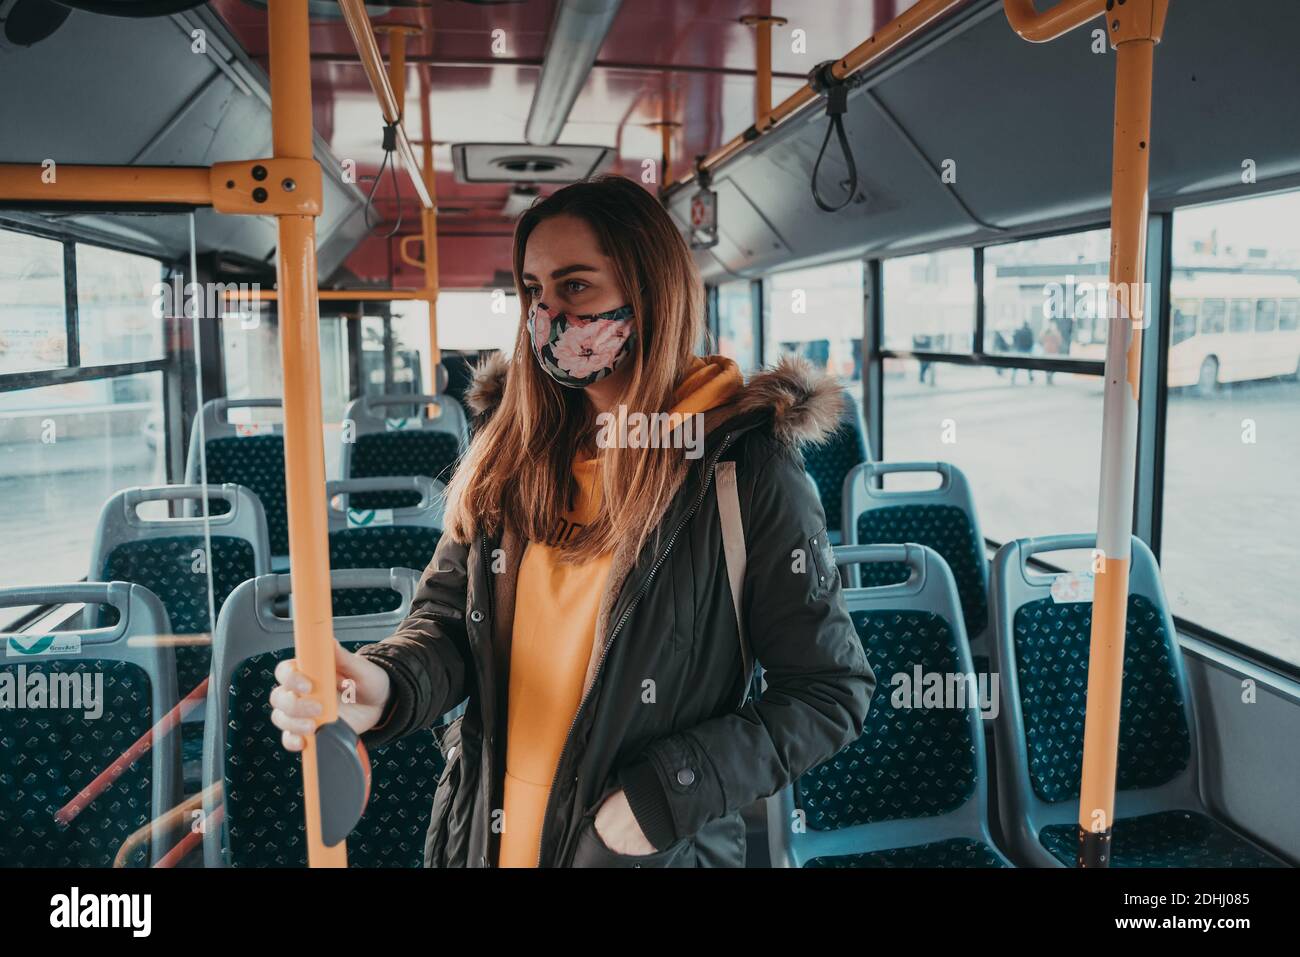 donna con maschera facciale covid-19 mezzi pubblici, fermata dell'autobus Foto Stock